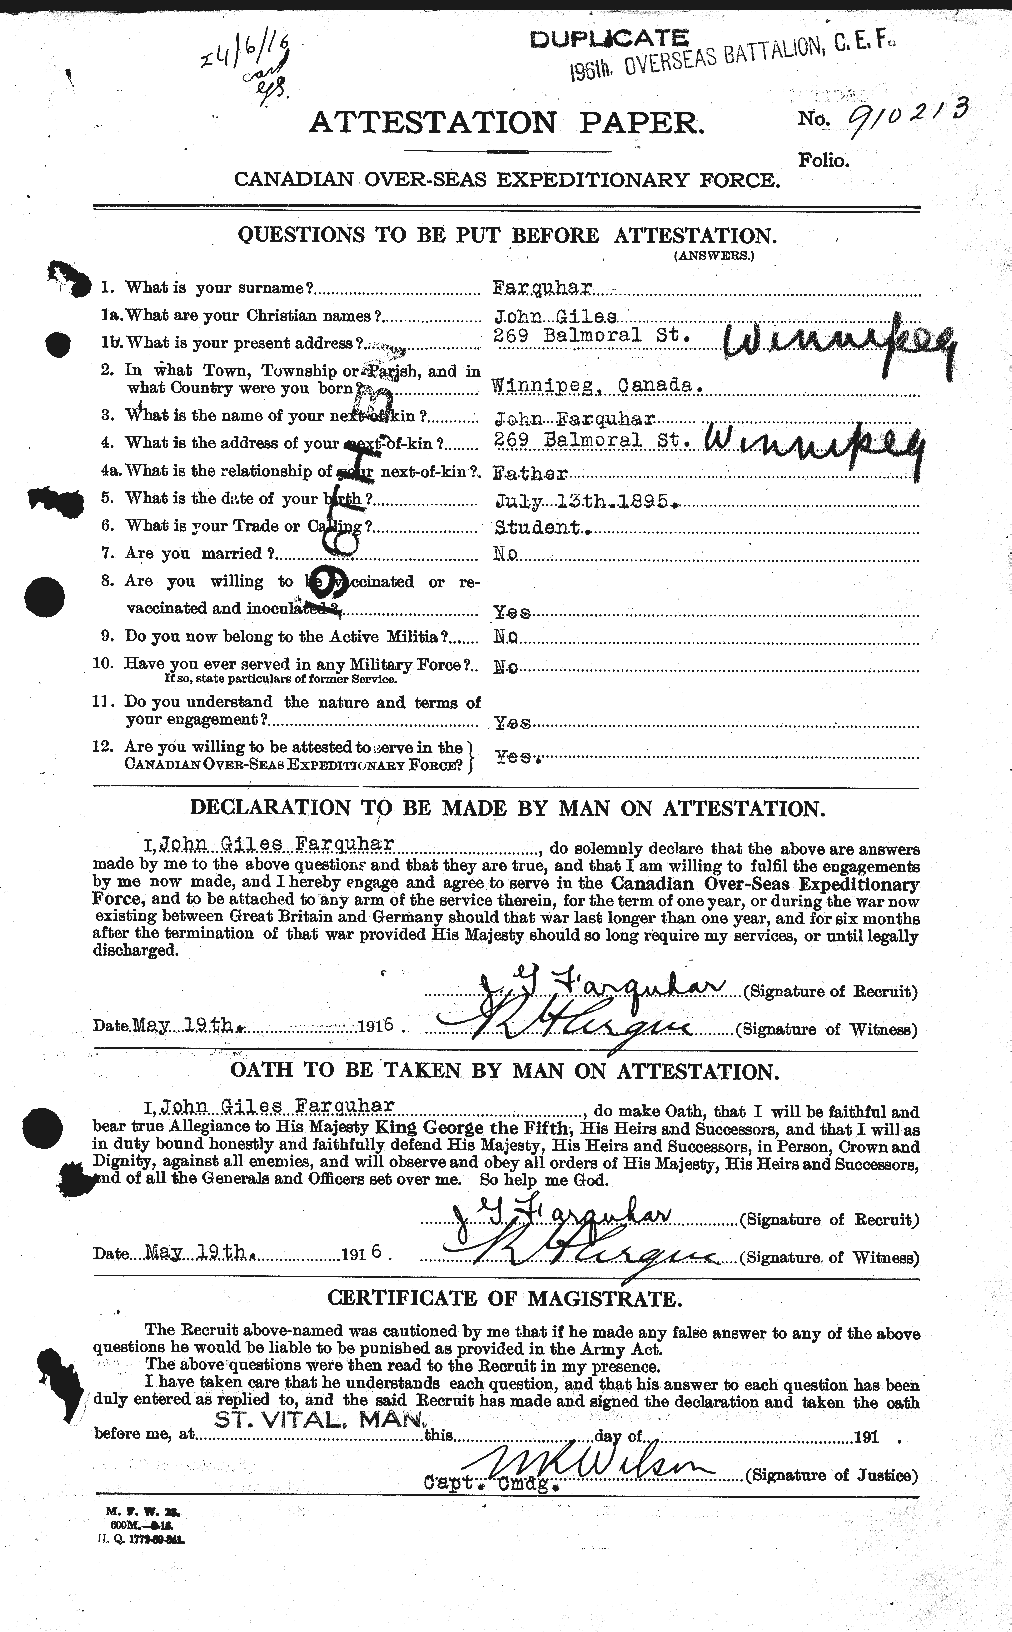 Dossiers du Personnel de la Première Guerre mondiale - CEC 318782a